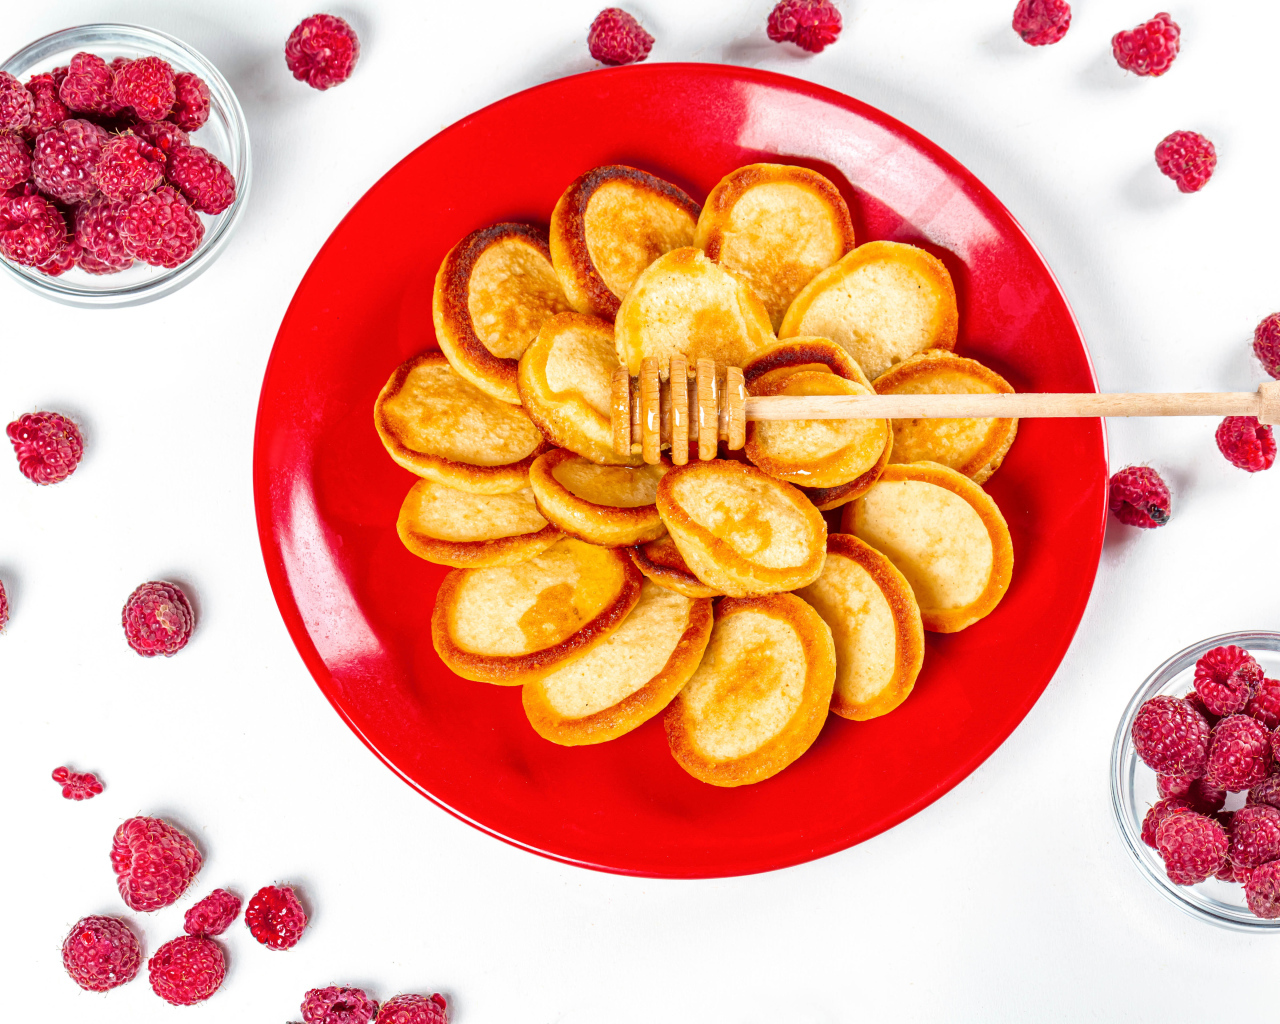 Оладьи на красной с медом на красной тарелке на столе с ягодами малины